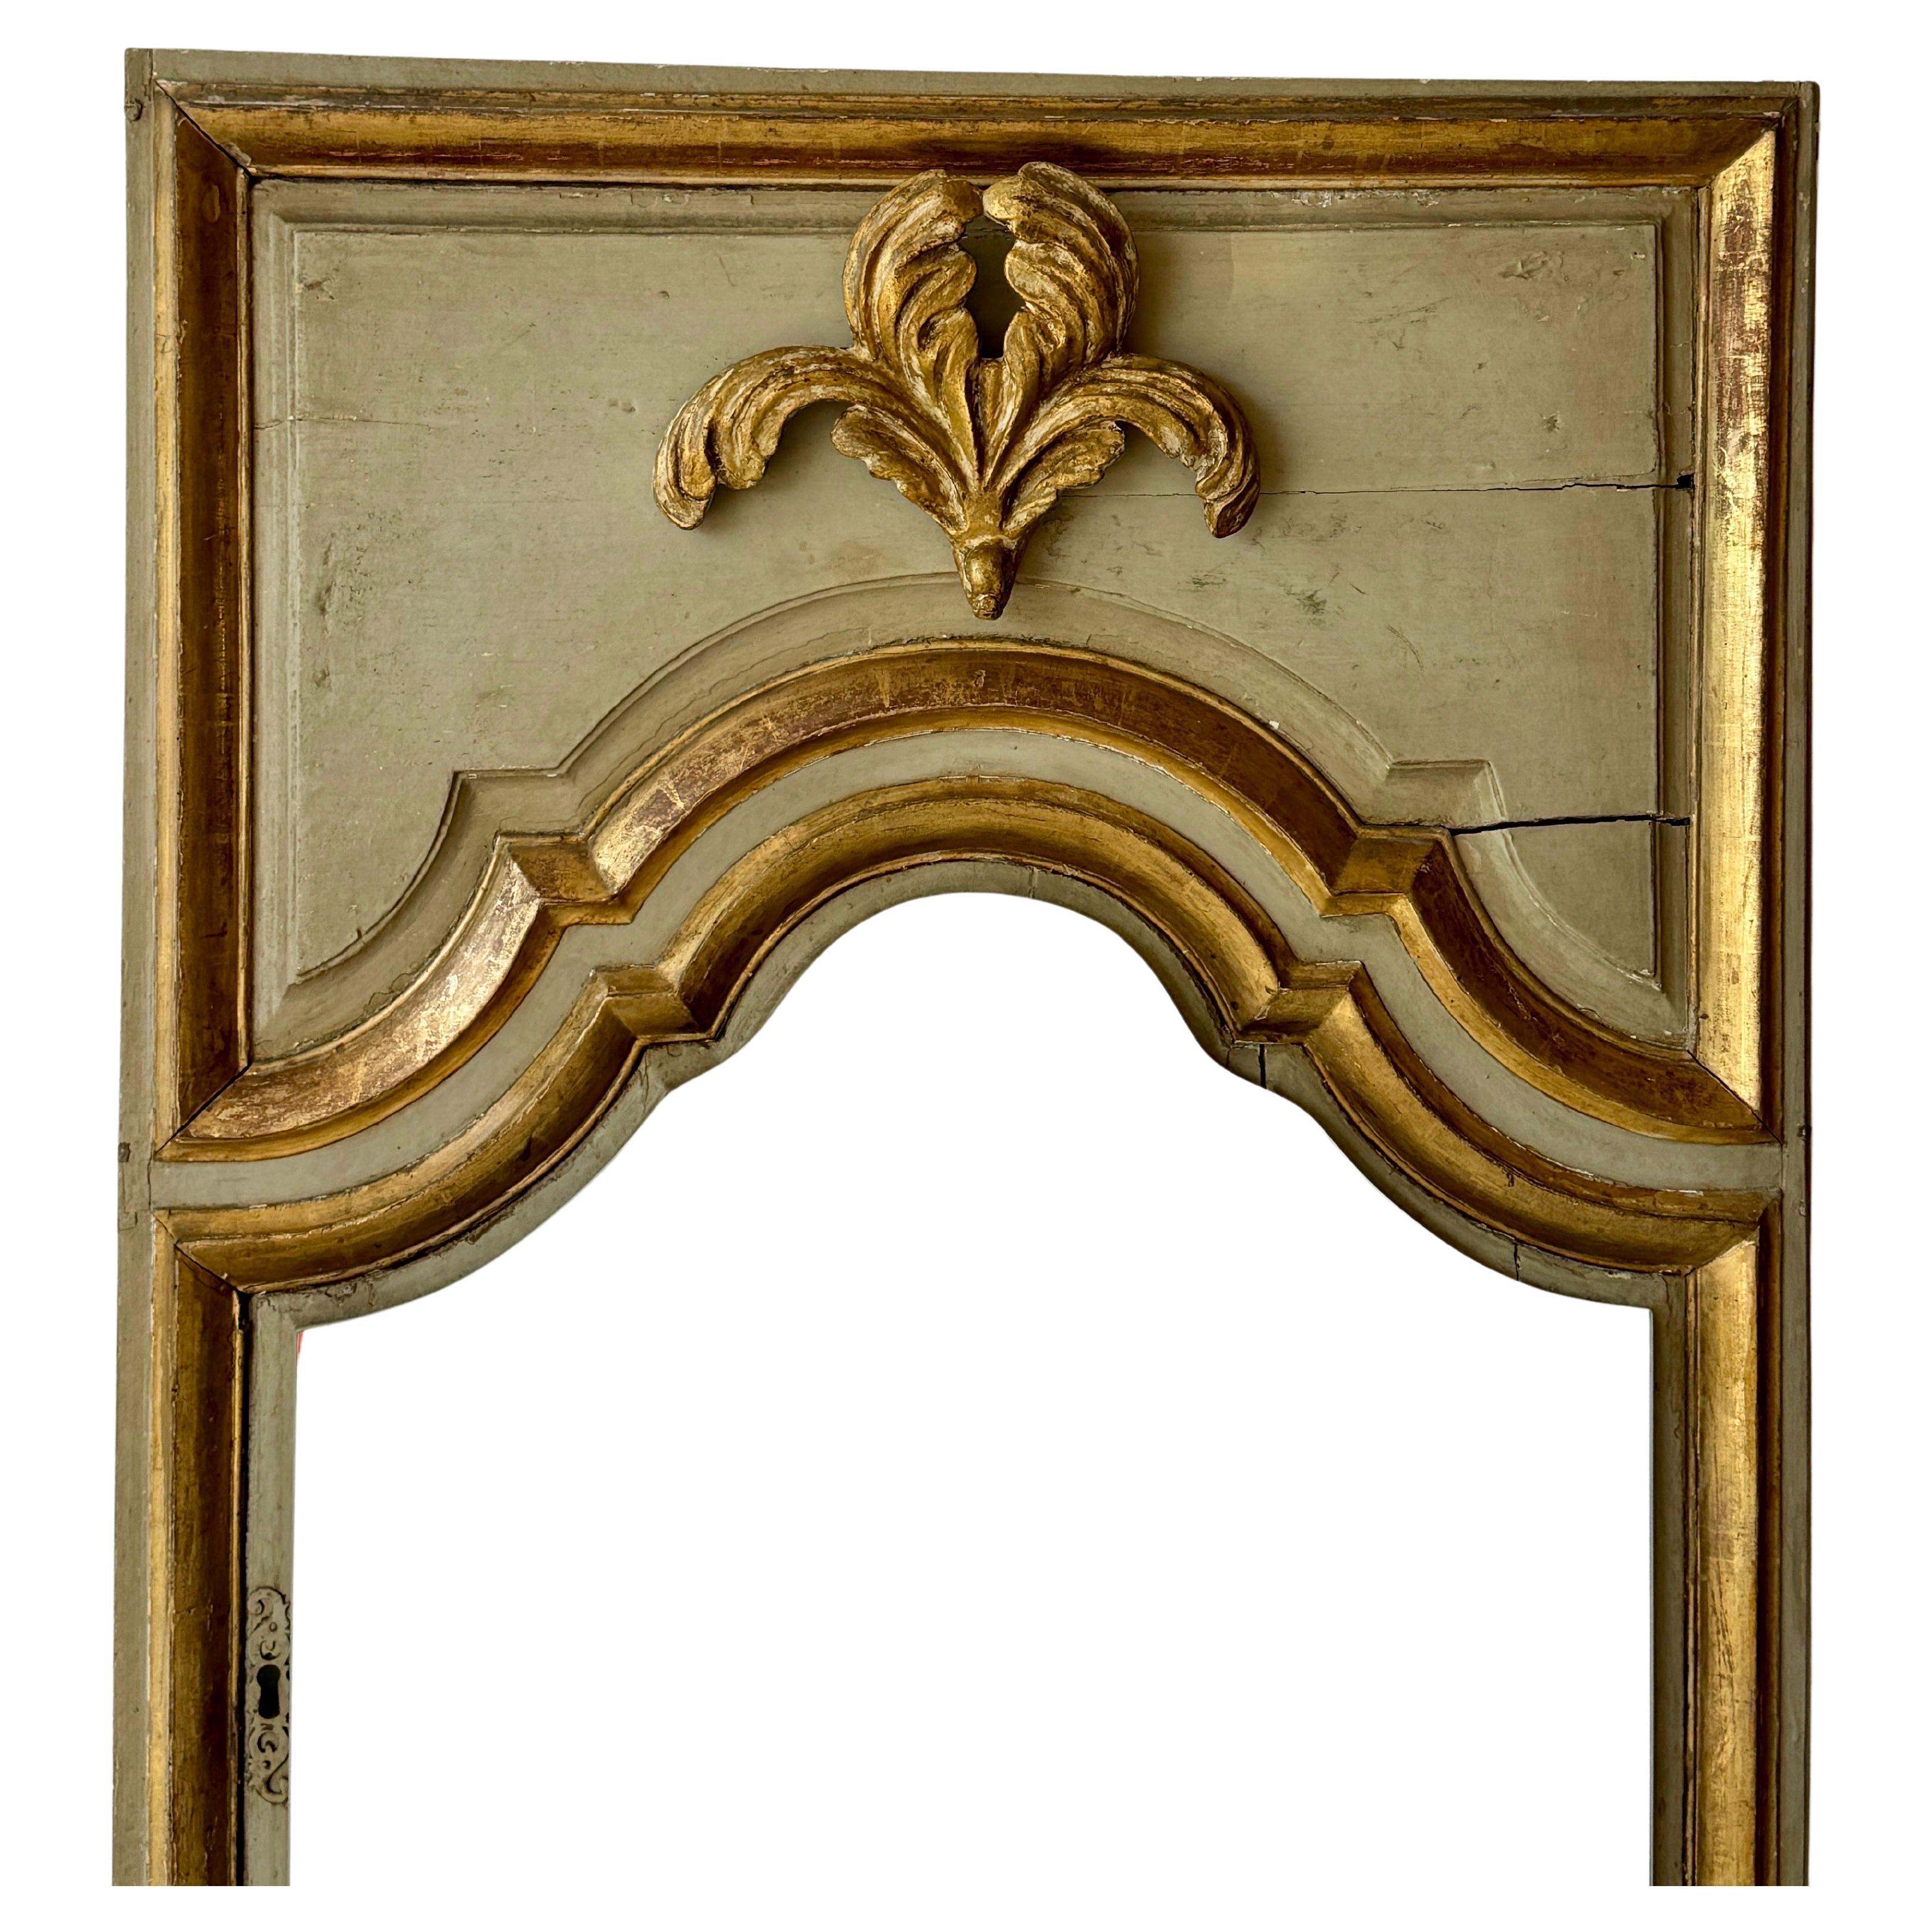 Diese großformatige französische Schranktür wurde zu einem einzigartigen Bodenspiegel umfunktioniert, der später mit Spiegelglas ergänzt wurde. Dieser bezaubernde Bodenspiegel aus Holz mit seiner Originallackierung und Vergoldung ist ein